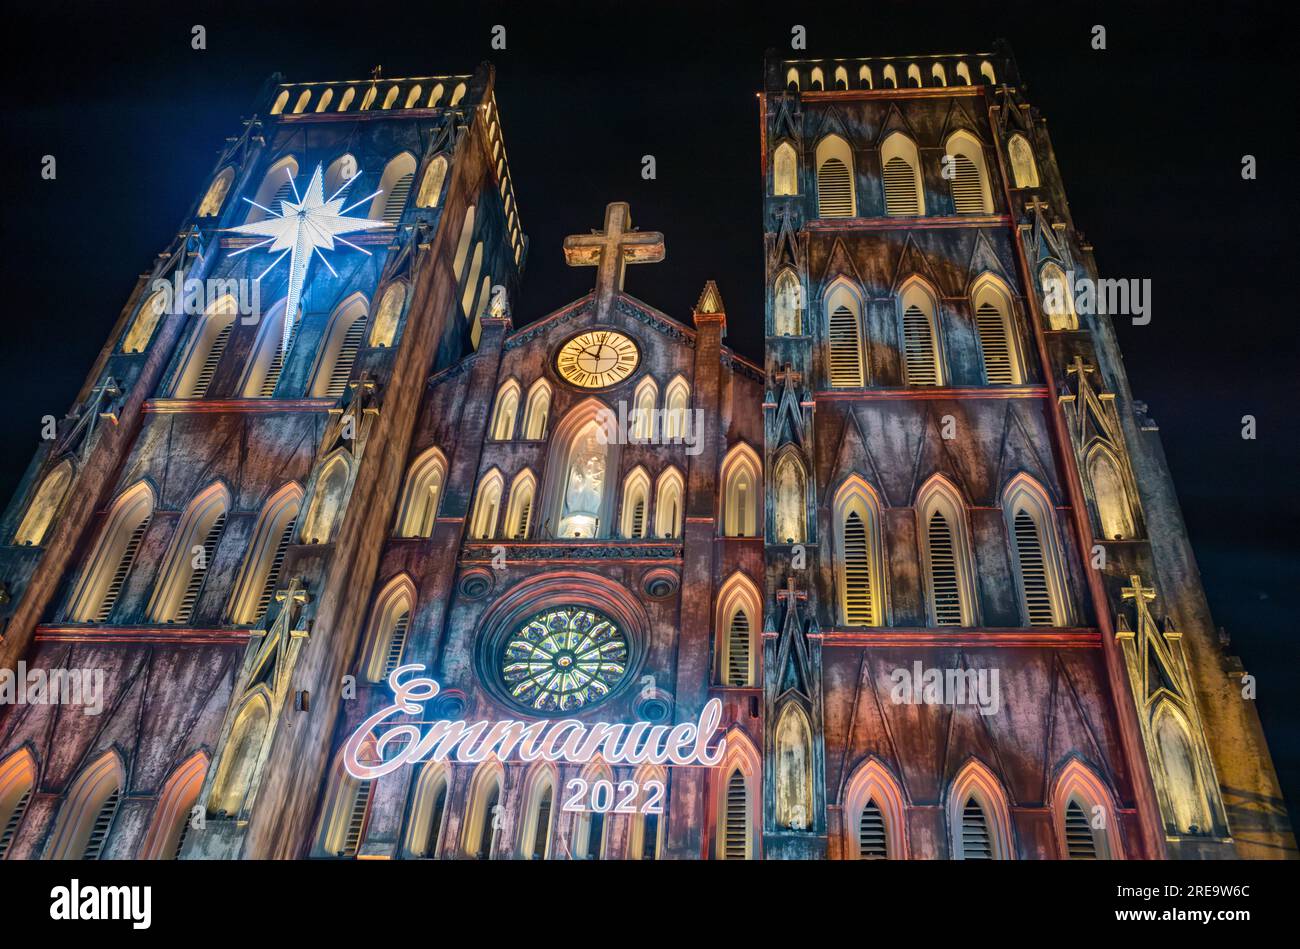 Die Vorderseite der St. Joseph's Cathedral im Zentrum von Hanoi, Vietnam, ist zu Weihnachten beleuchtet. Obwohl Vietnam ein kommunistisches Land ist, hat es a la Stockfoto